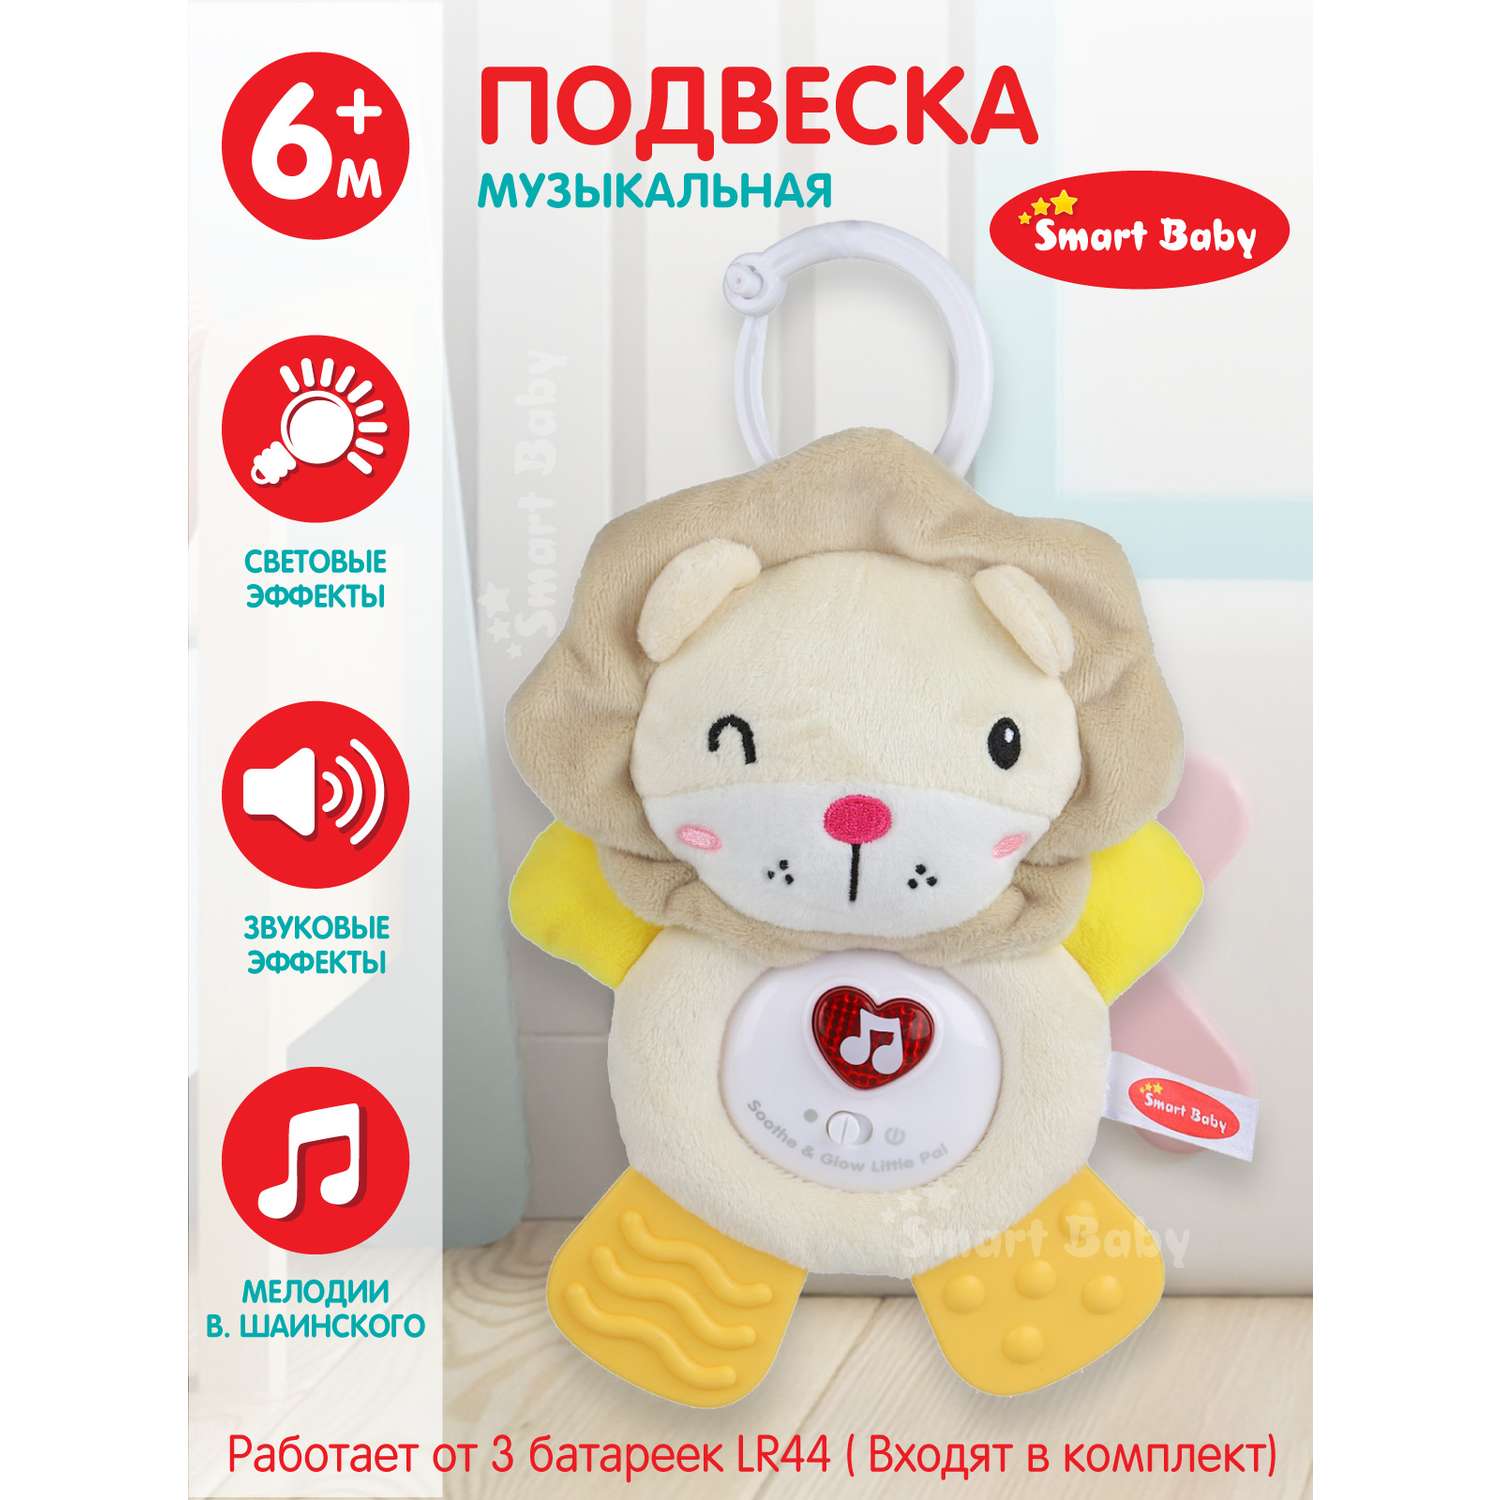 Подвеска музыкальная Smart Baby Львенок с прорезывателем интерактивная JB0333392 - фото 1